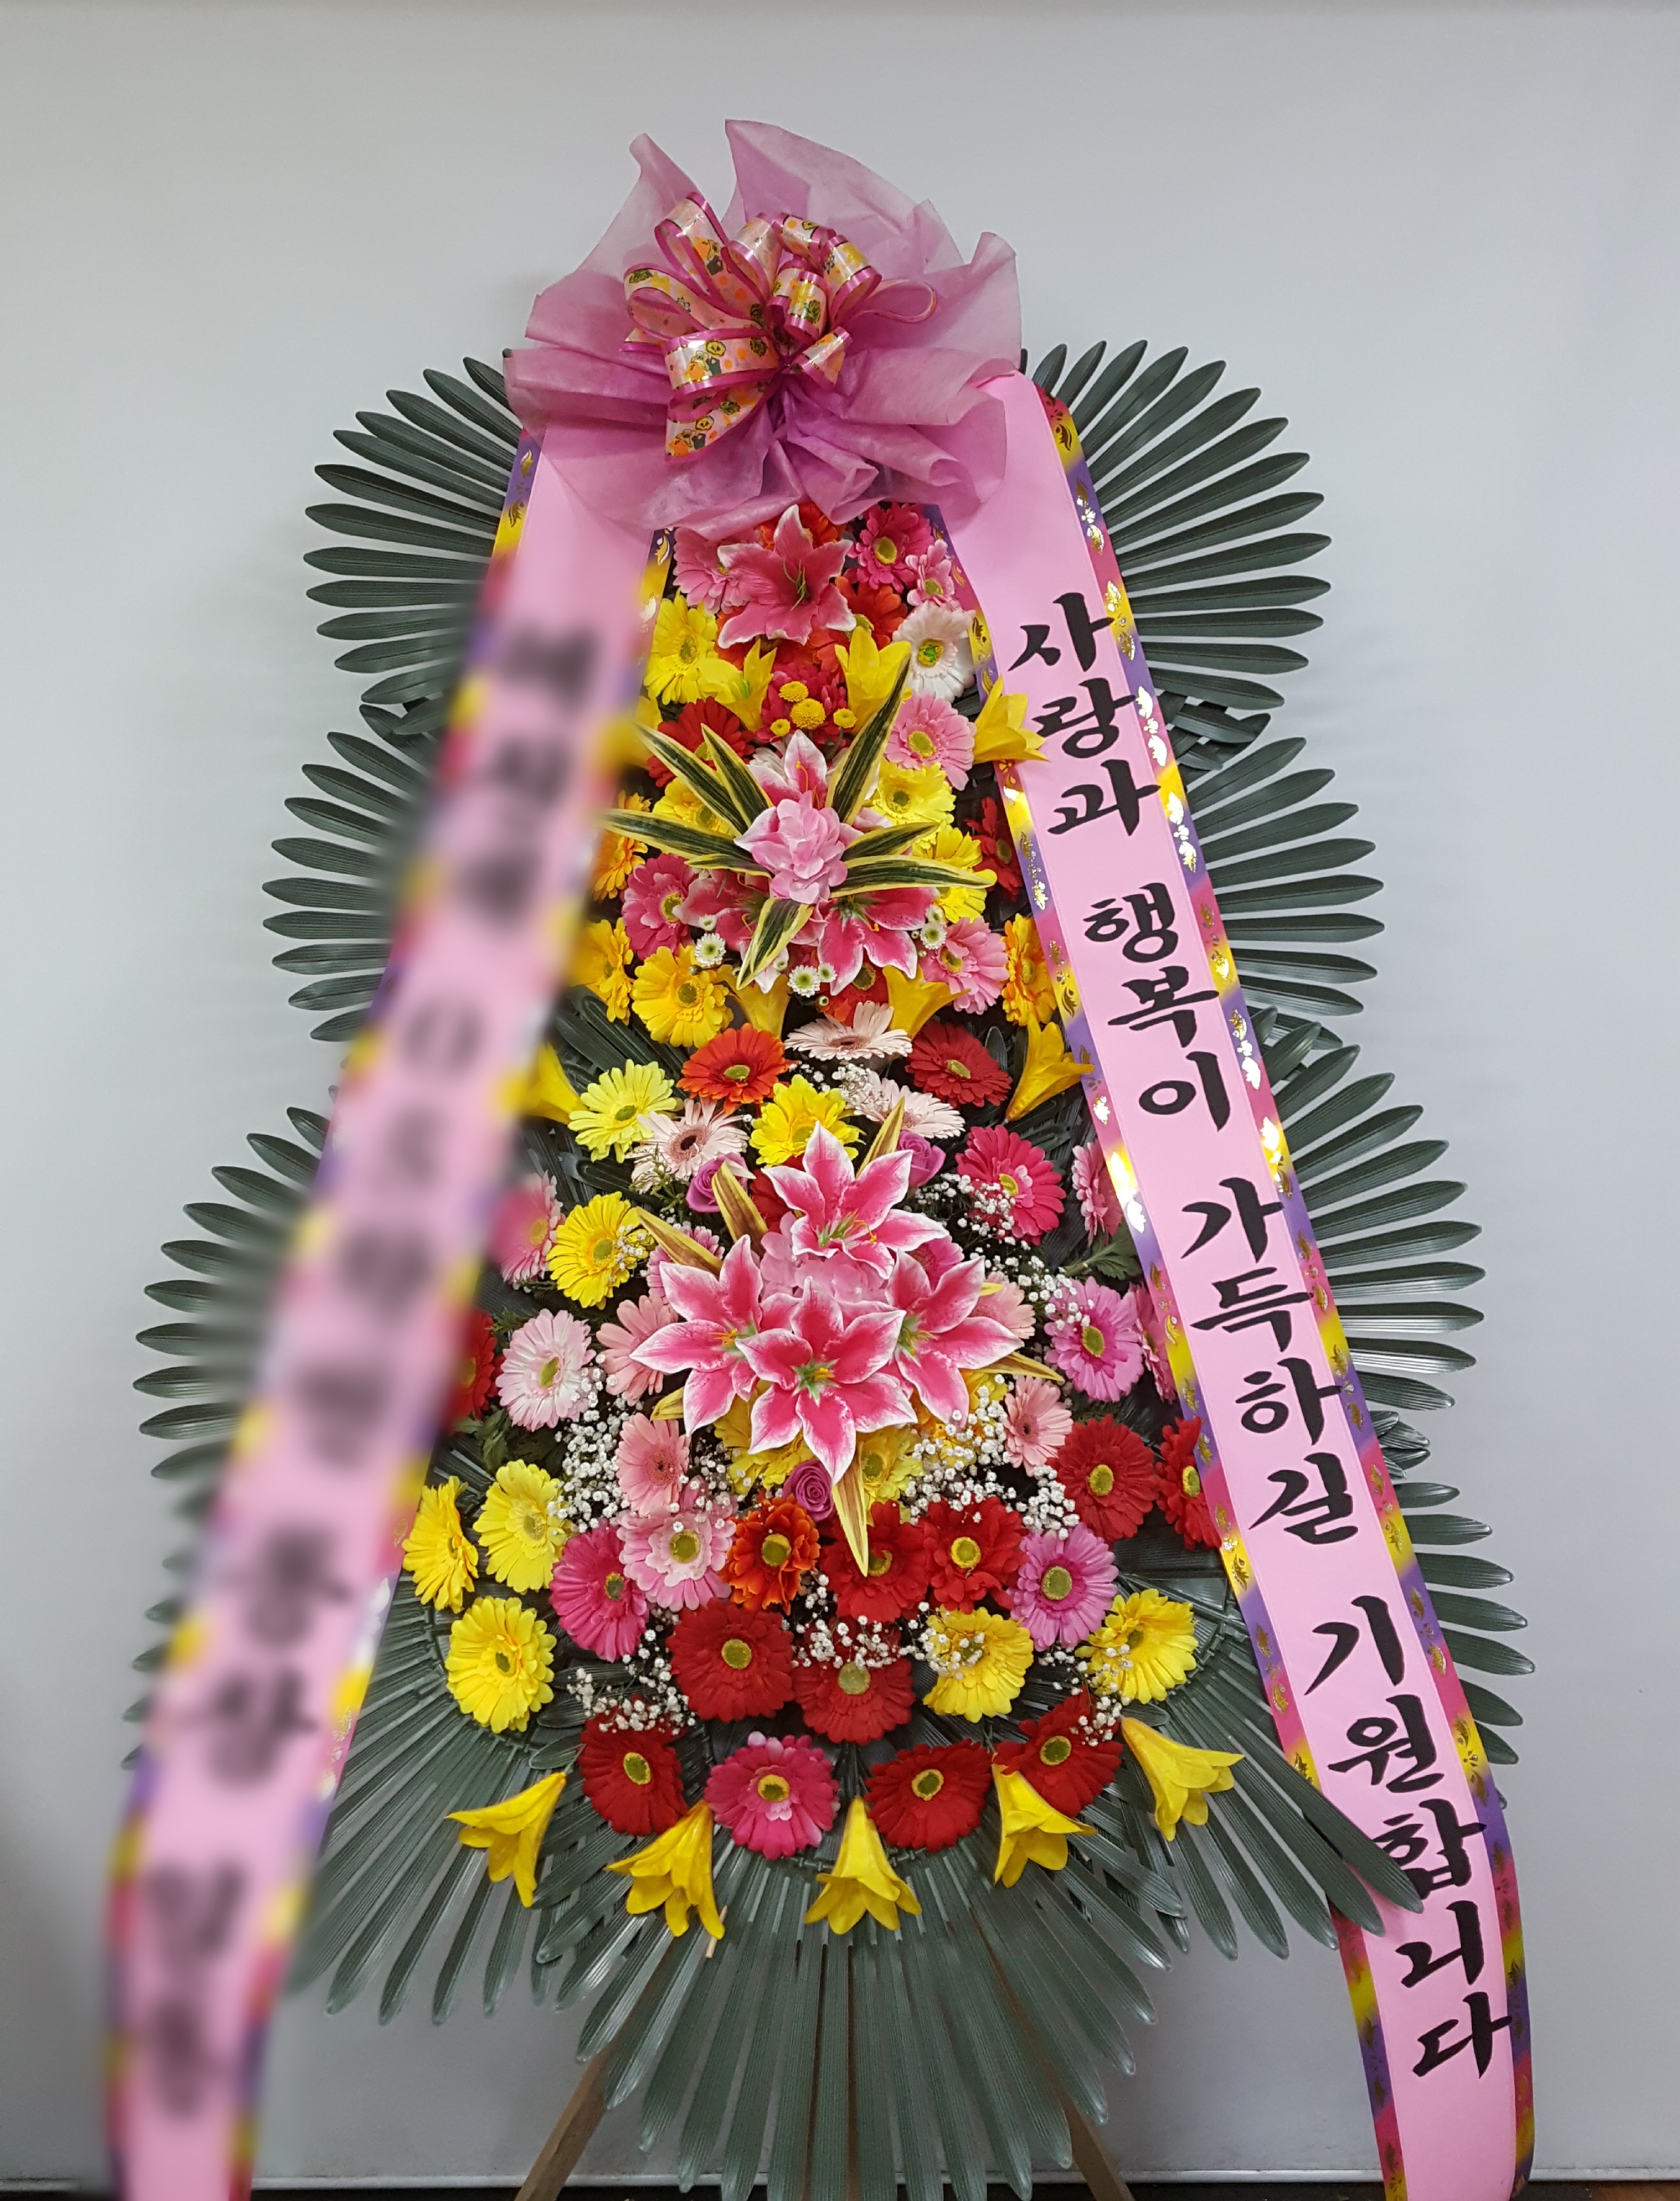 서ㅇㅇ님이 인천으로 주문하신 축하화환 